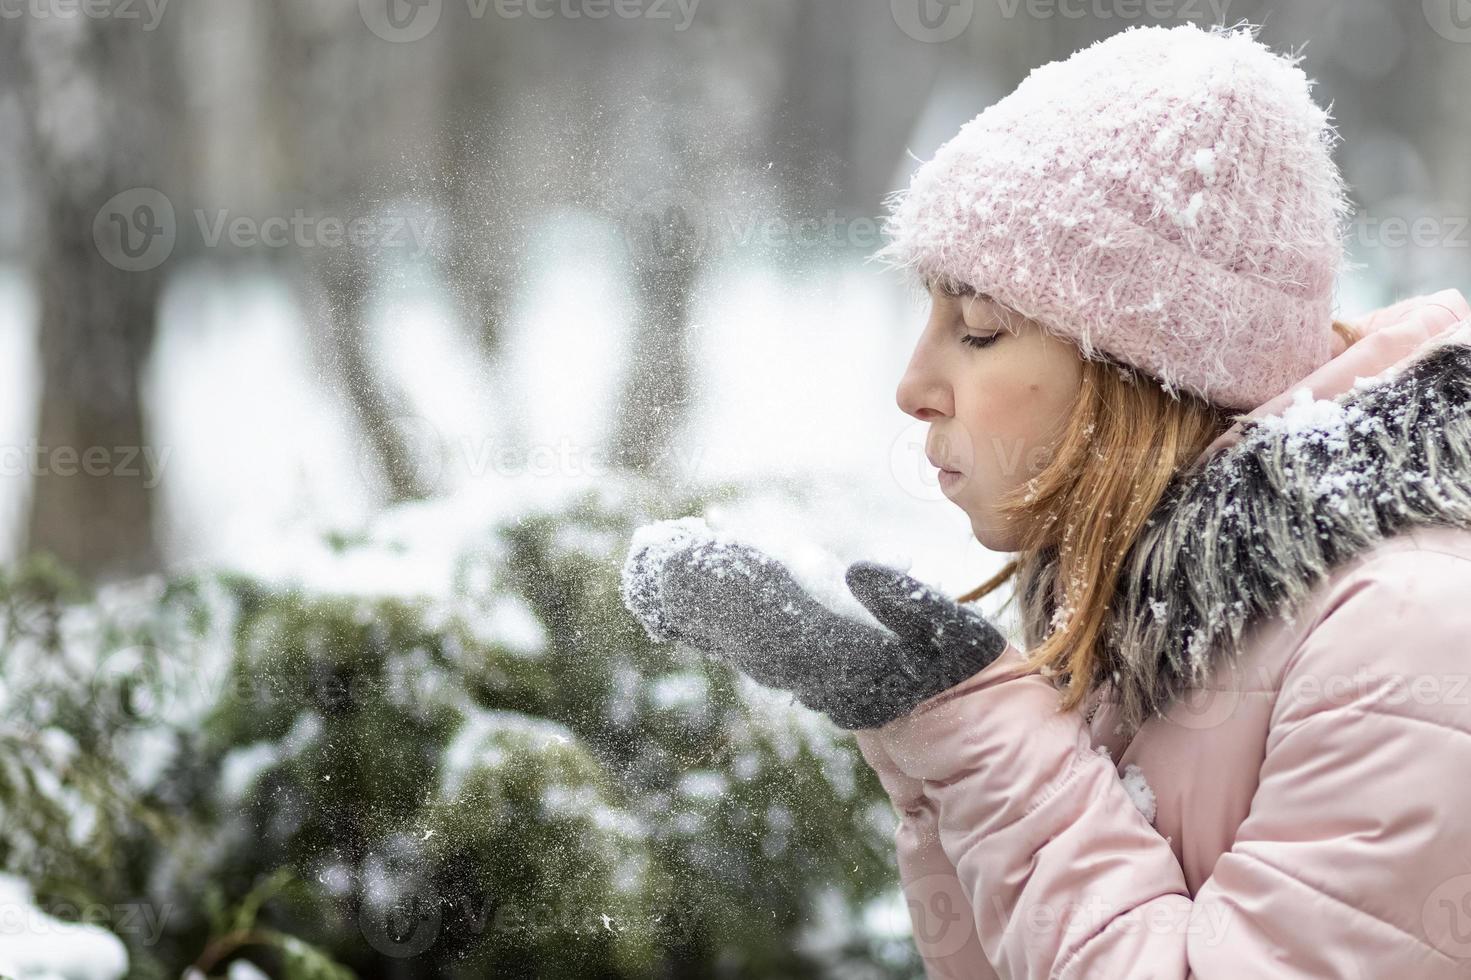 mulher feliz em um dia nevado de inverno no parque, vestida com roupas quentes, limpa a neve de suas luvas foto